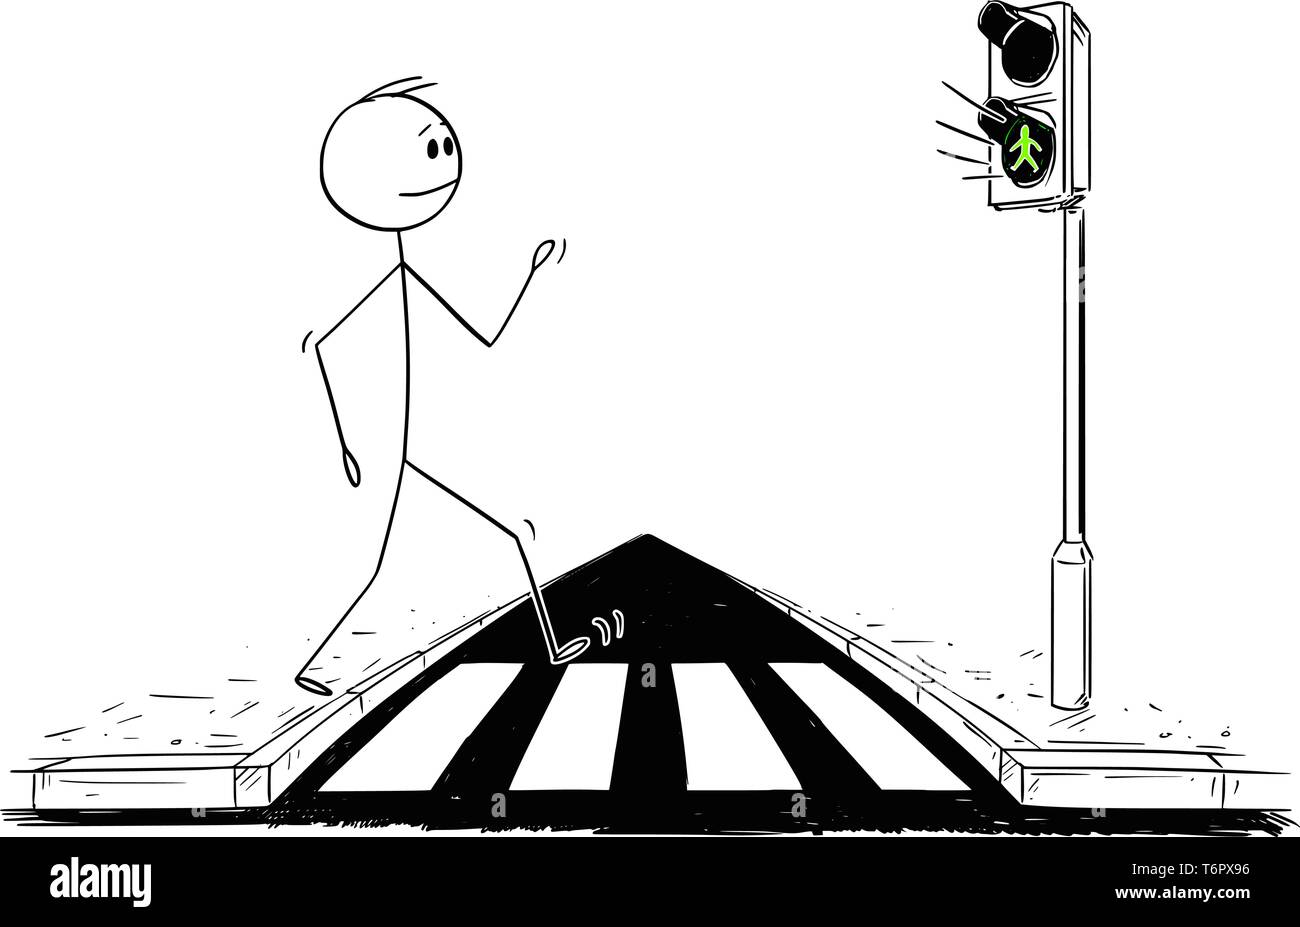 Cartoon Strichmännchen Zeichnen konzeptionelle Darstellung der Mann zu Fuß auf zebrastreifen oder Zebrastreifen, während die grüne Anzeige leuchtet auf Ampeln. Stock Vektor